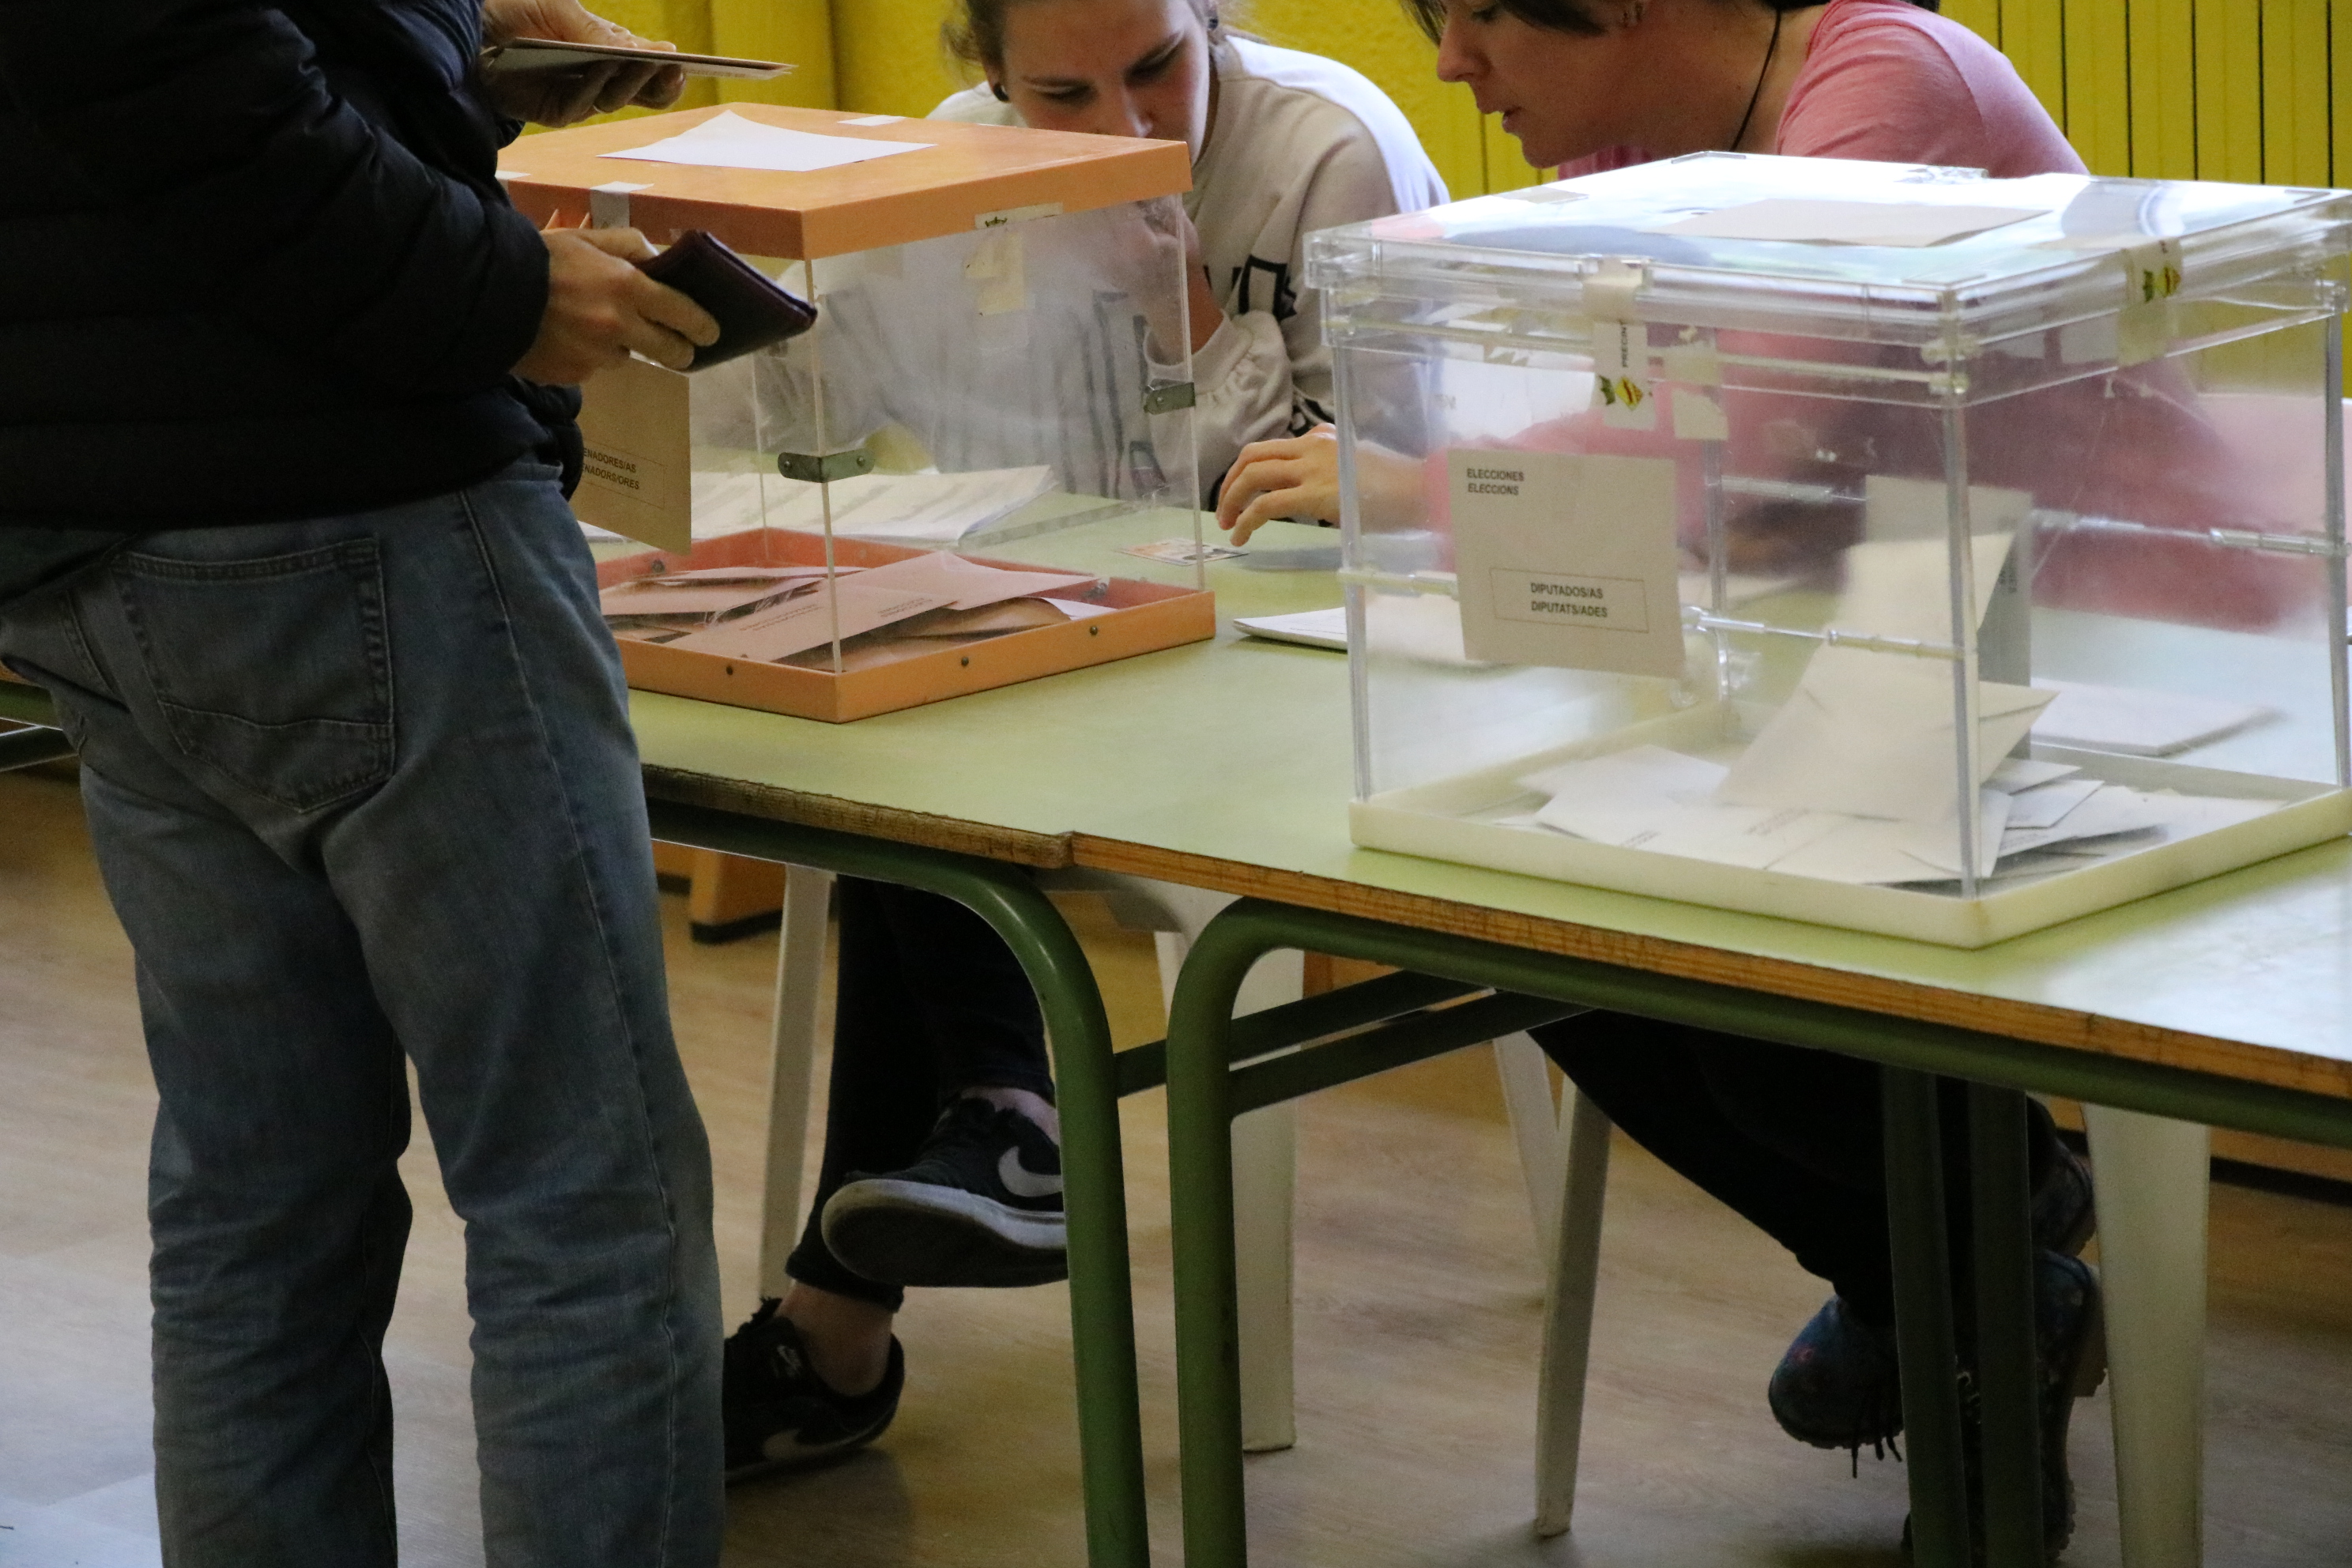 La participació ja és 18 punts més alta a la Llagosta respecte a les darreres eleccions generals